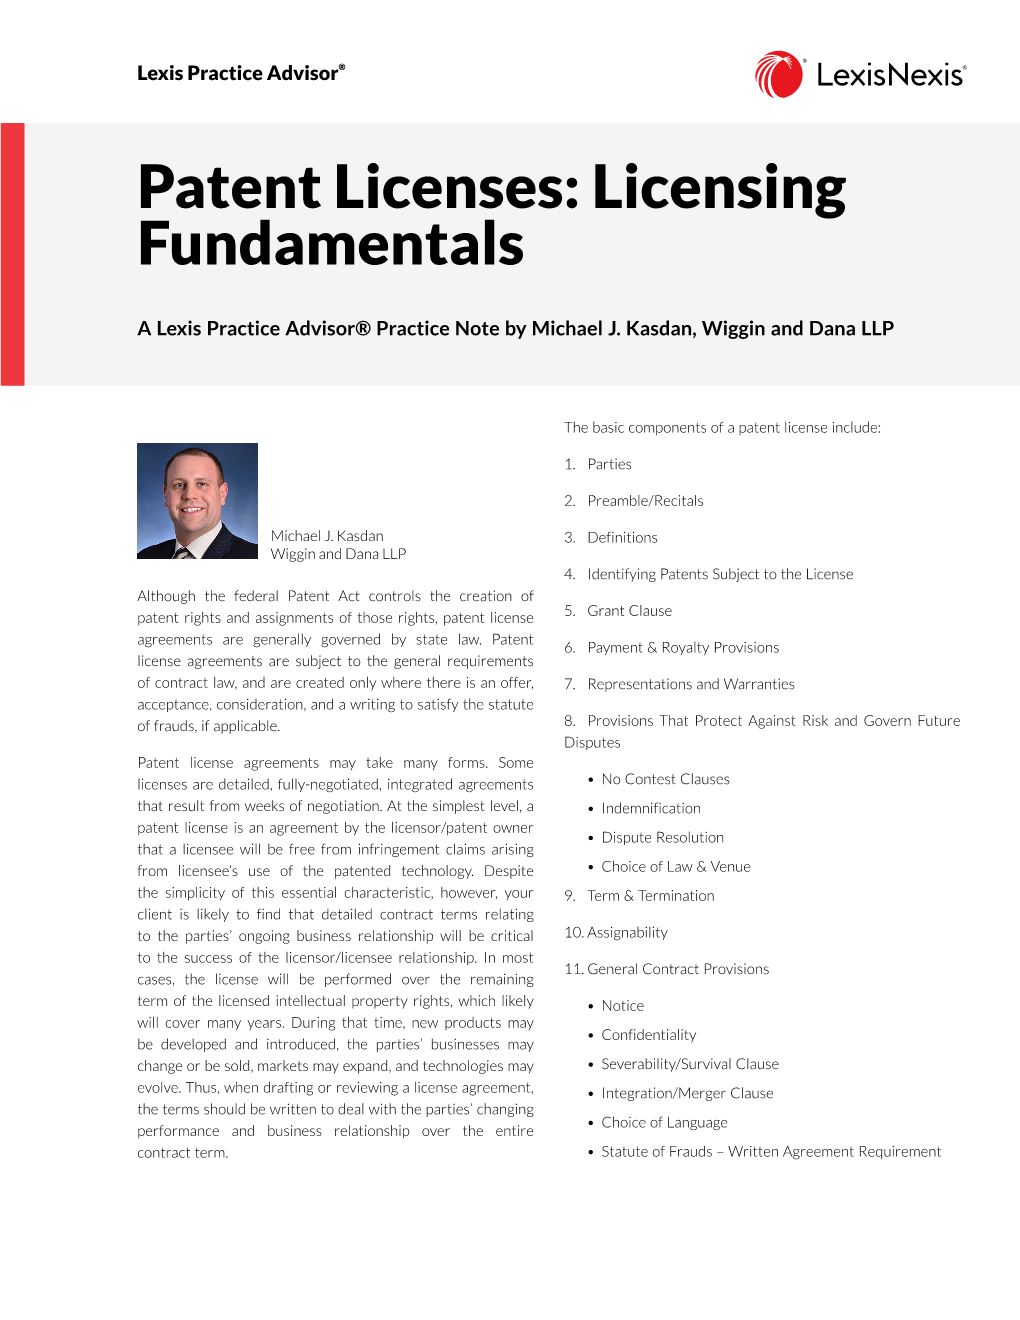 Patent Licenses: Licensing Fundamentals